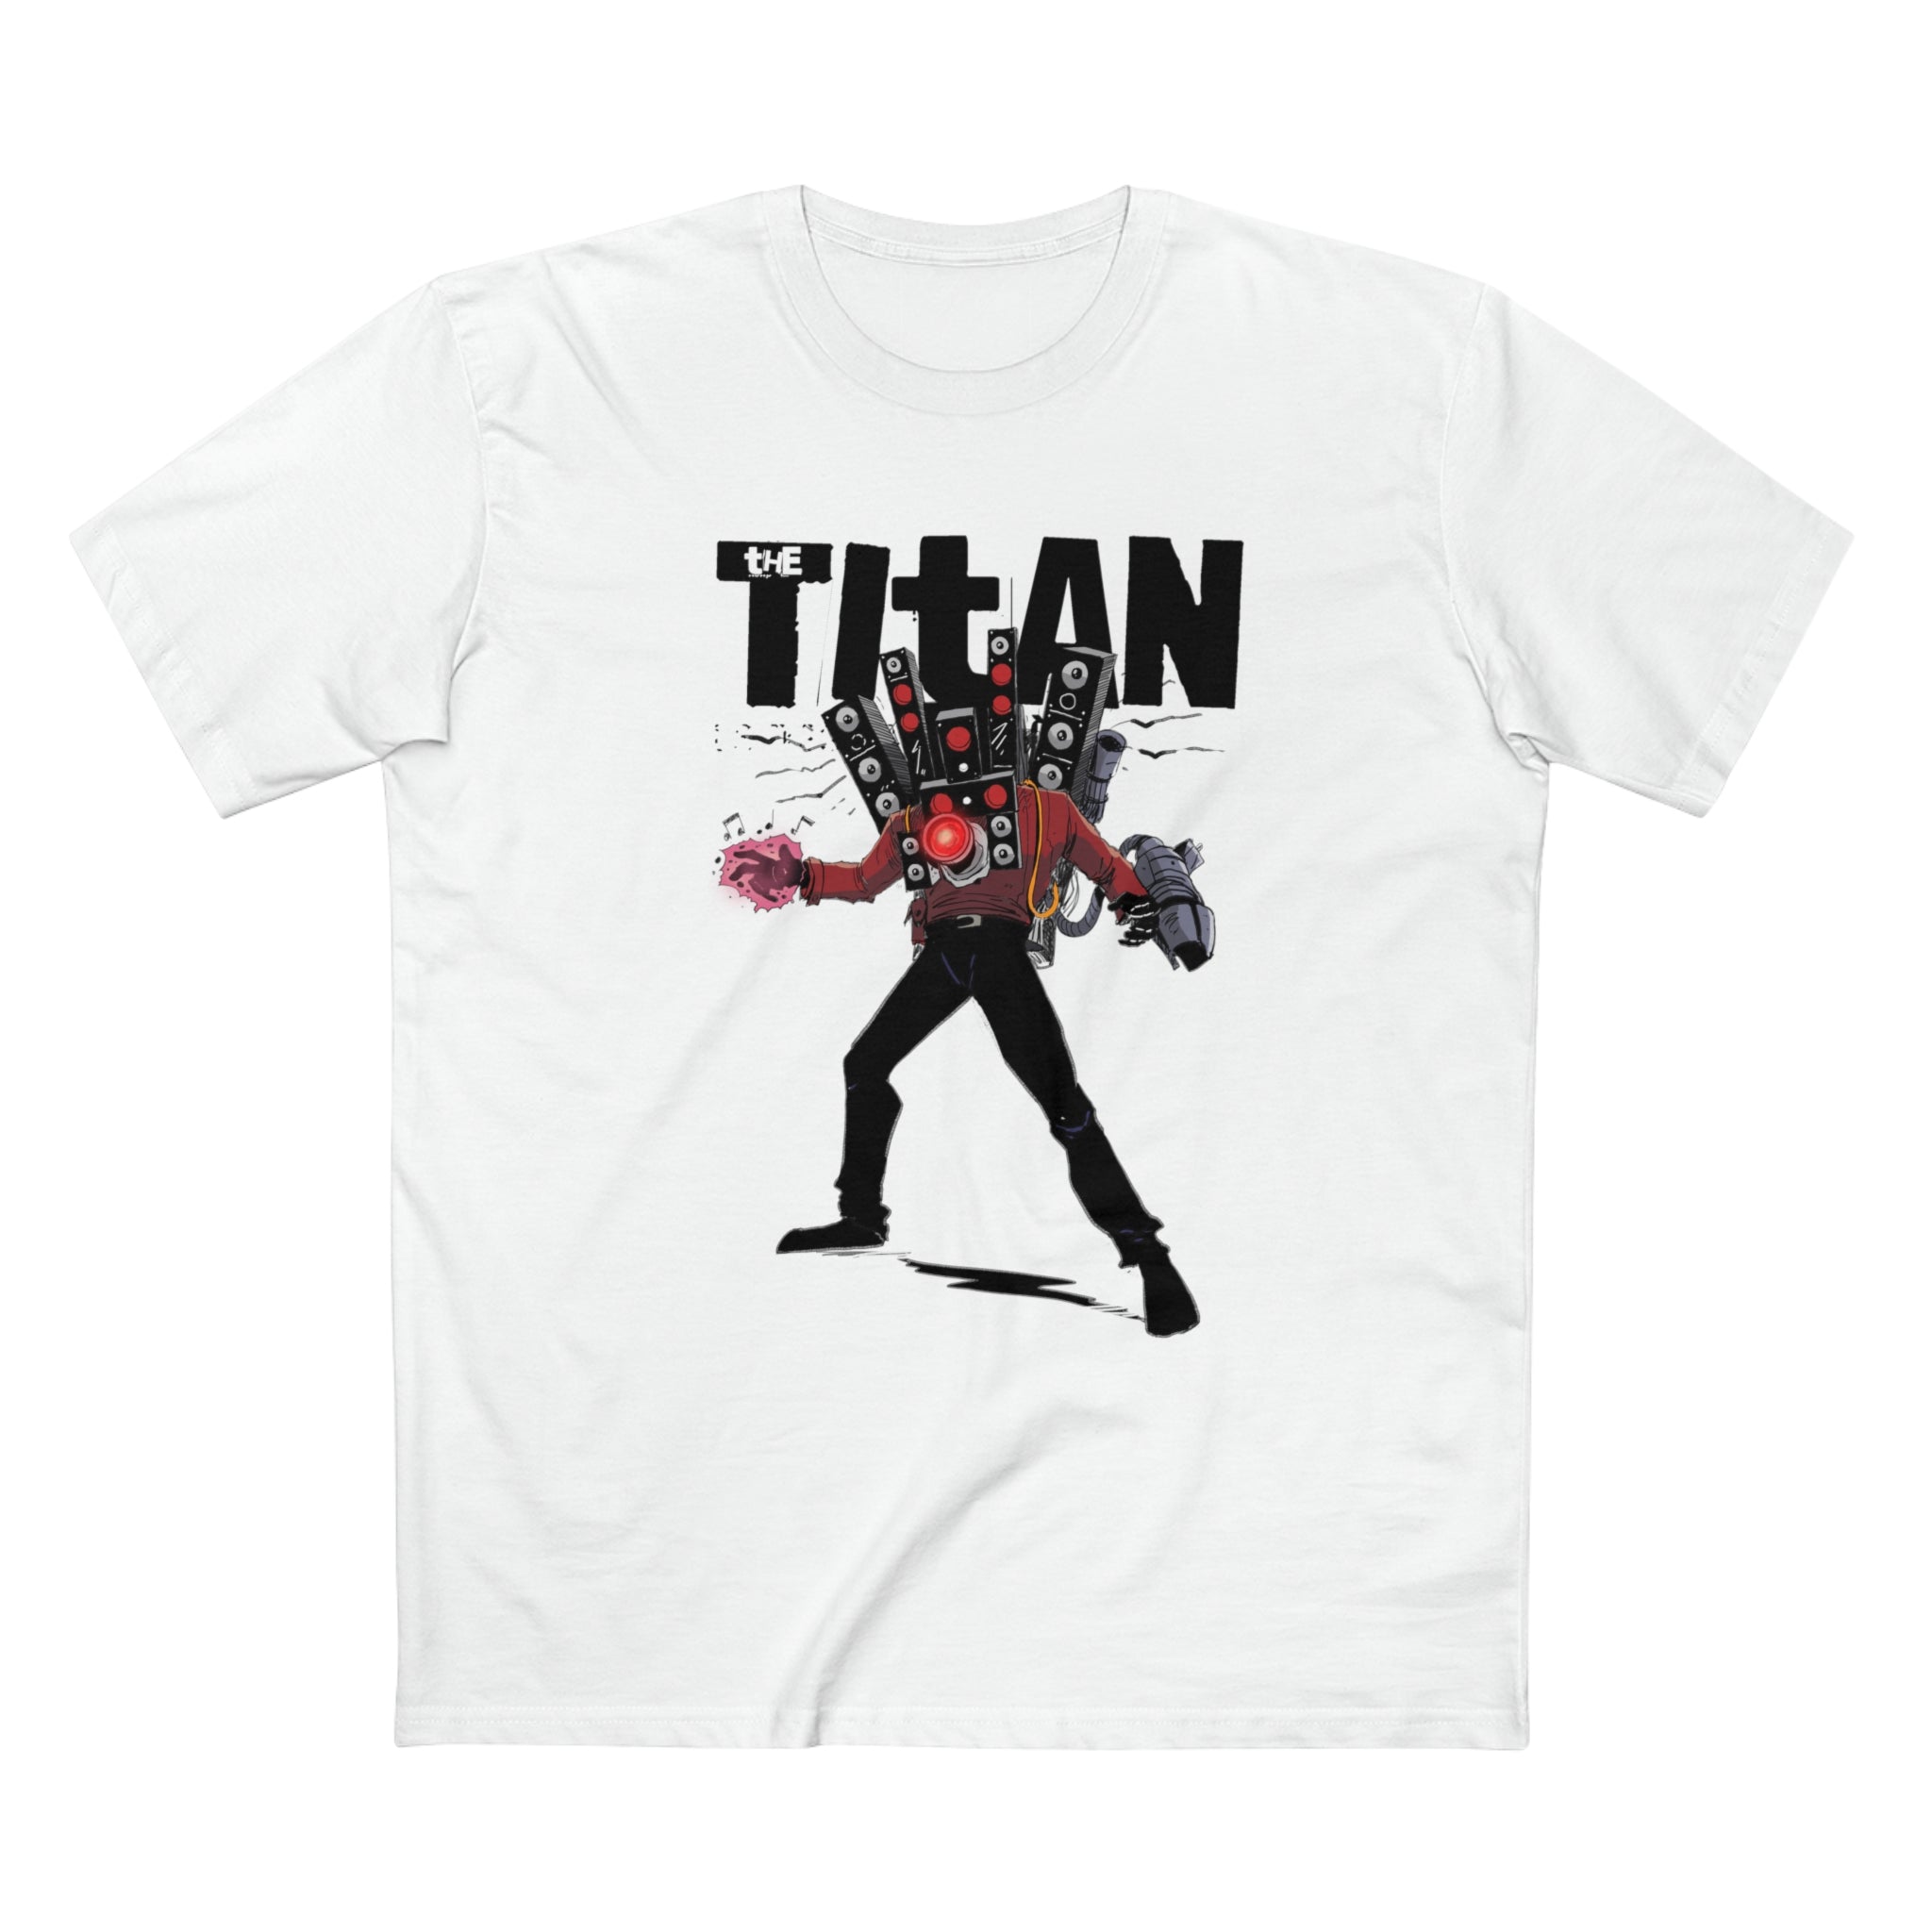 Titans 3XL shirt